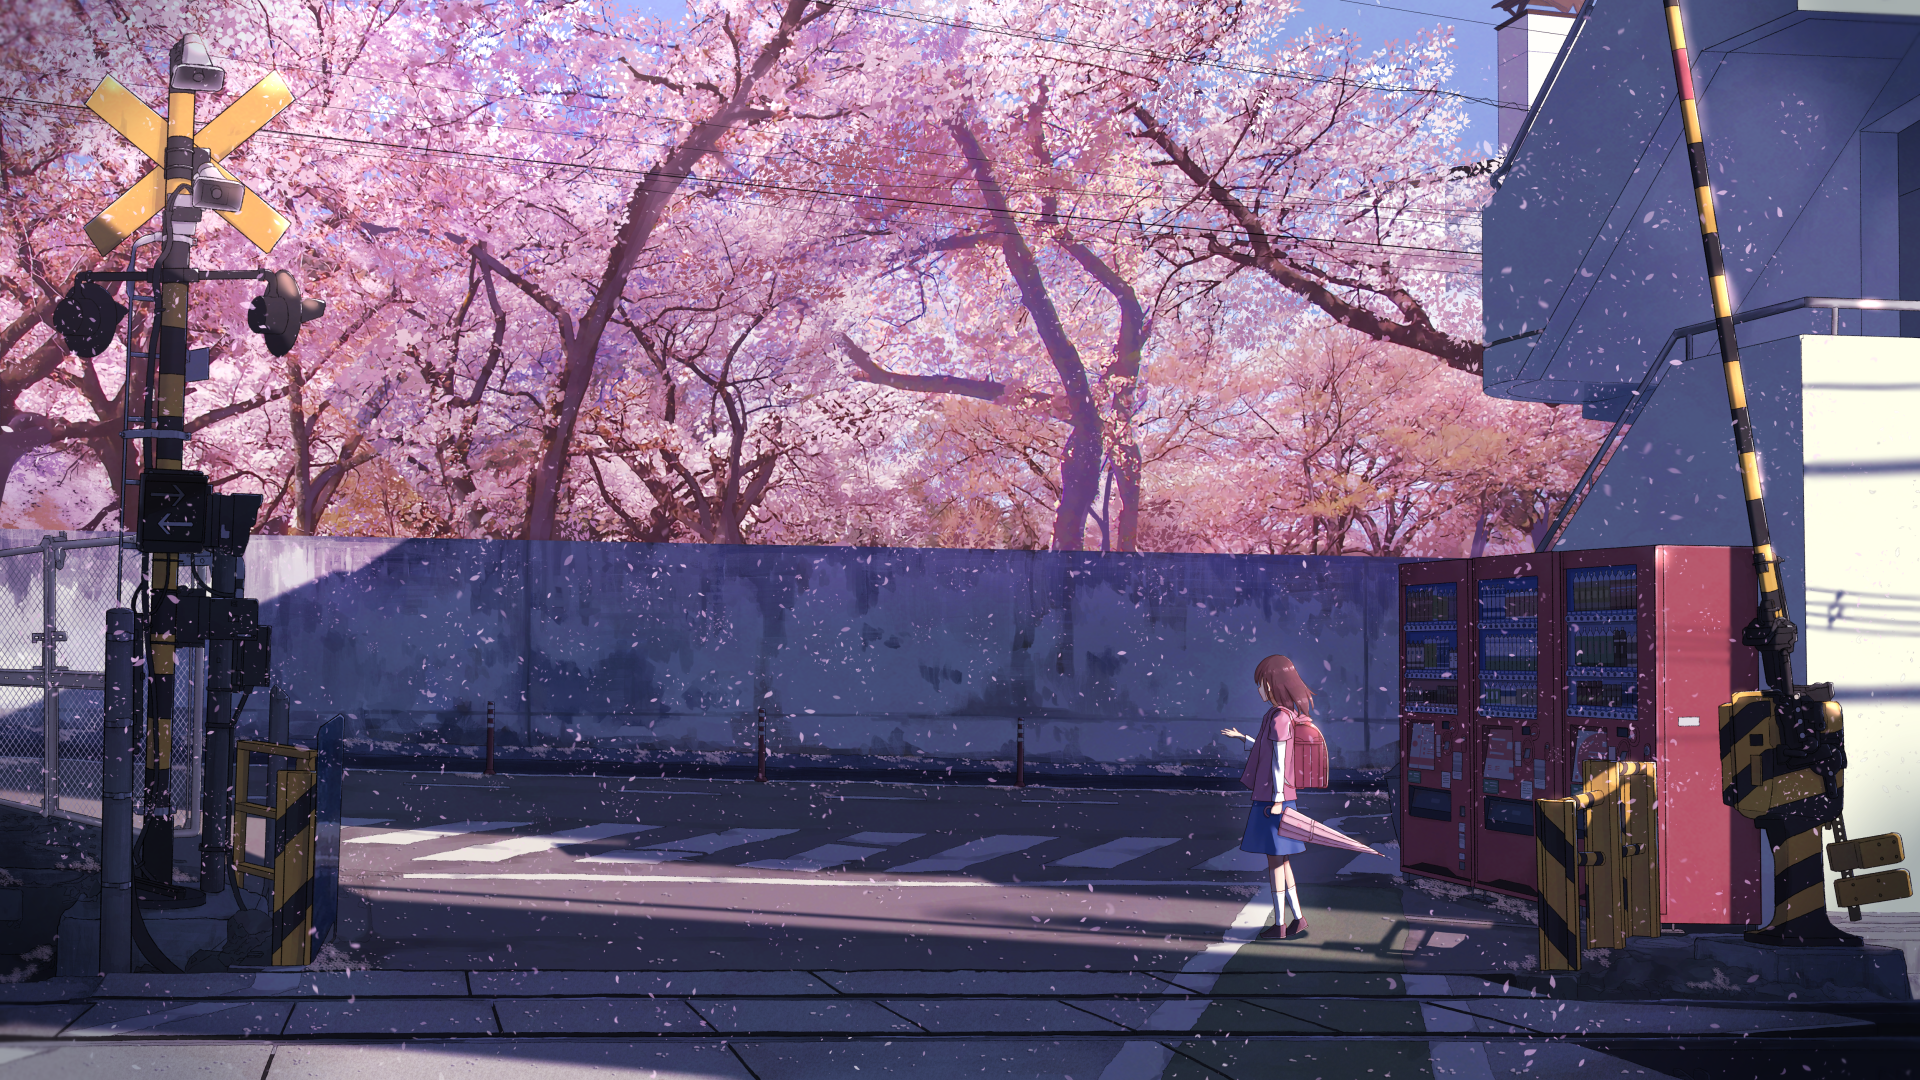 Download 1920x1080 Anime School Girl .wallpapermaiden.com